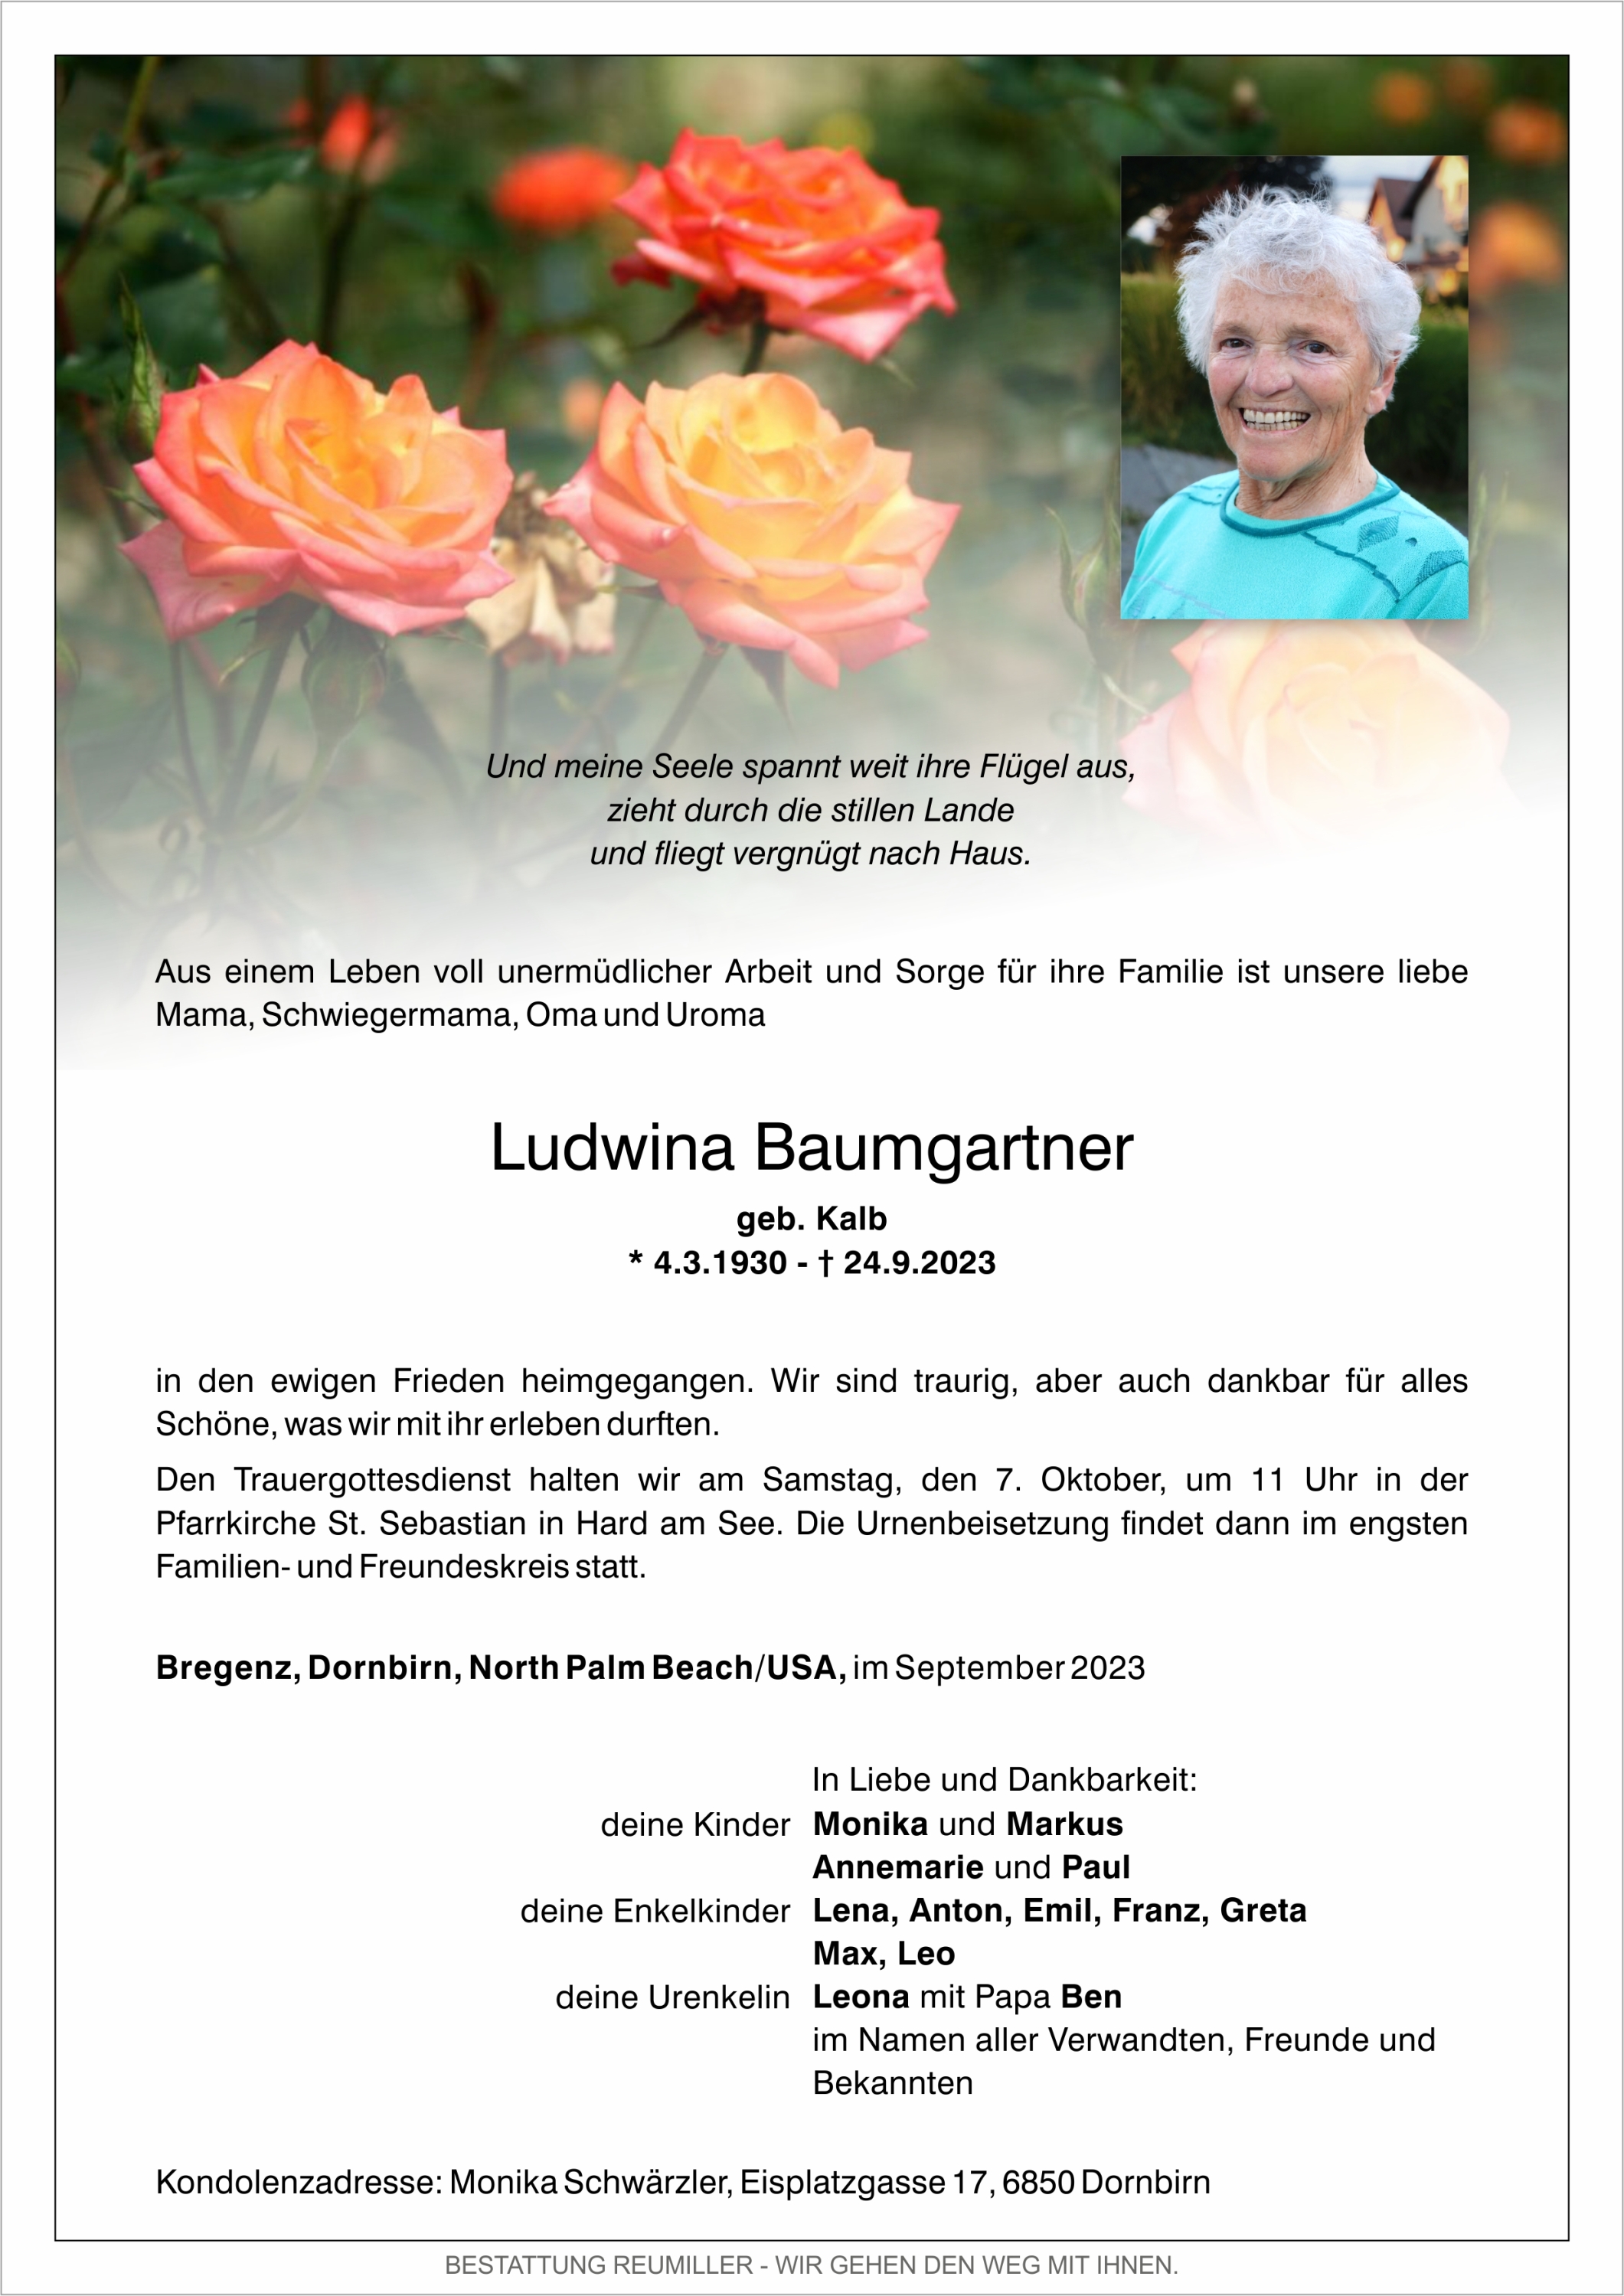 Ludwina Baumgartner